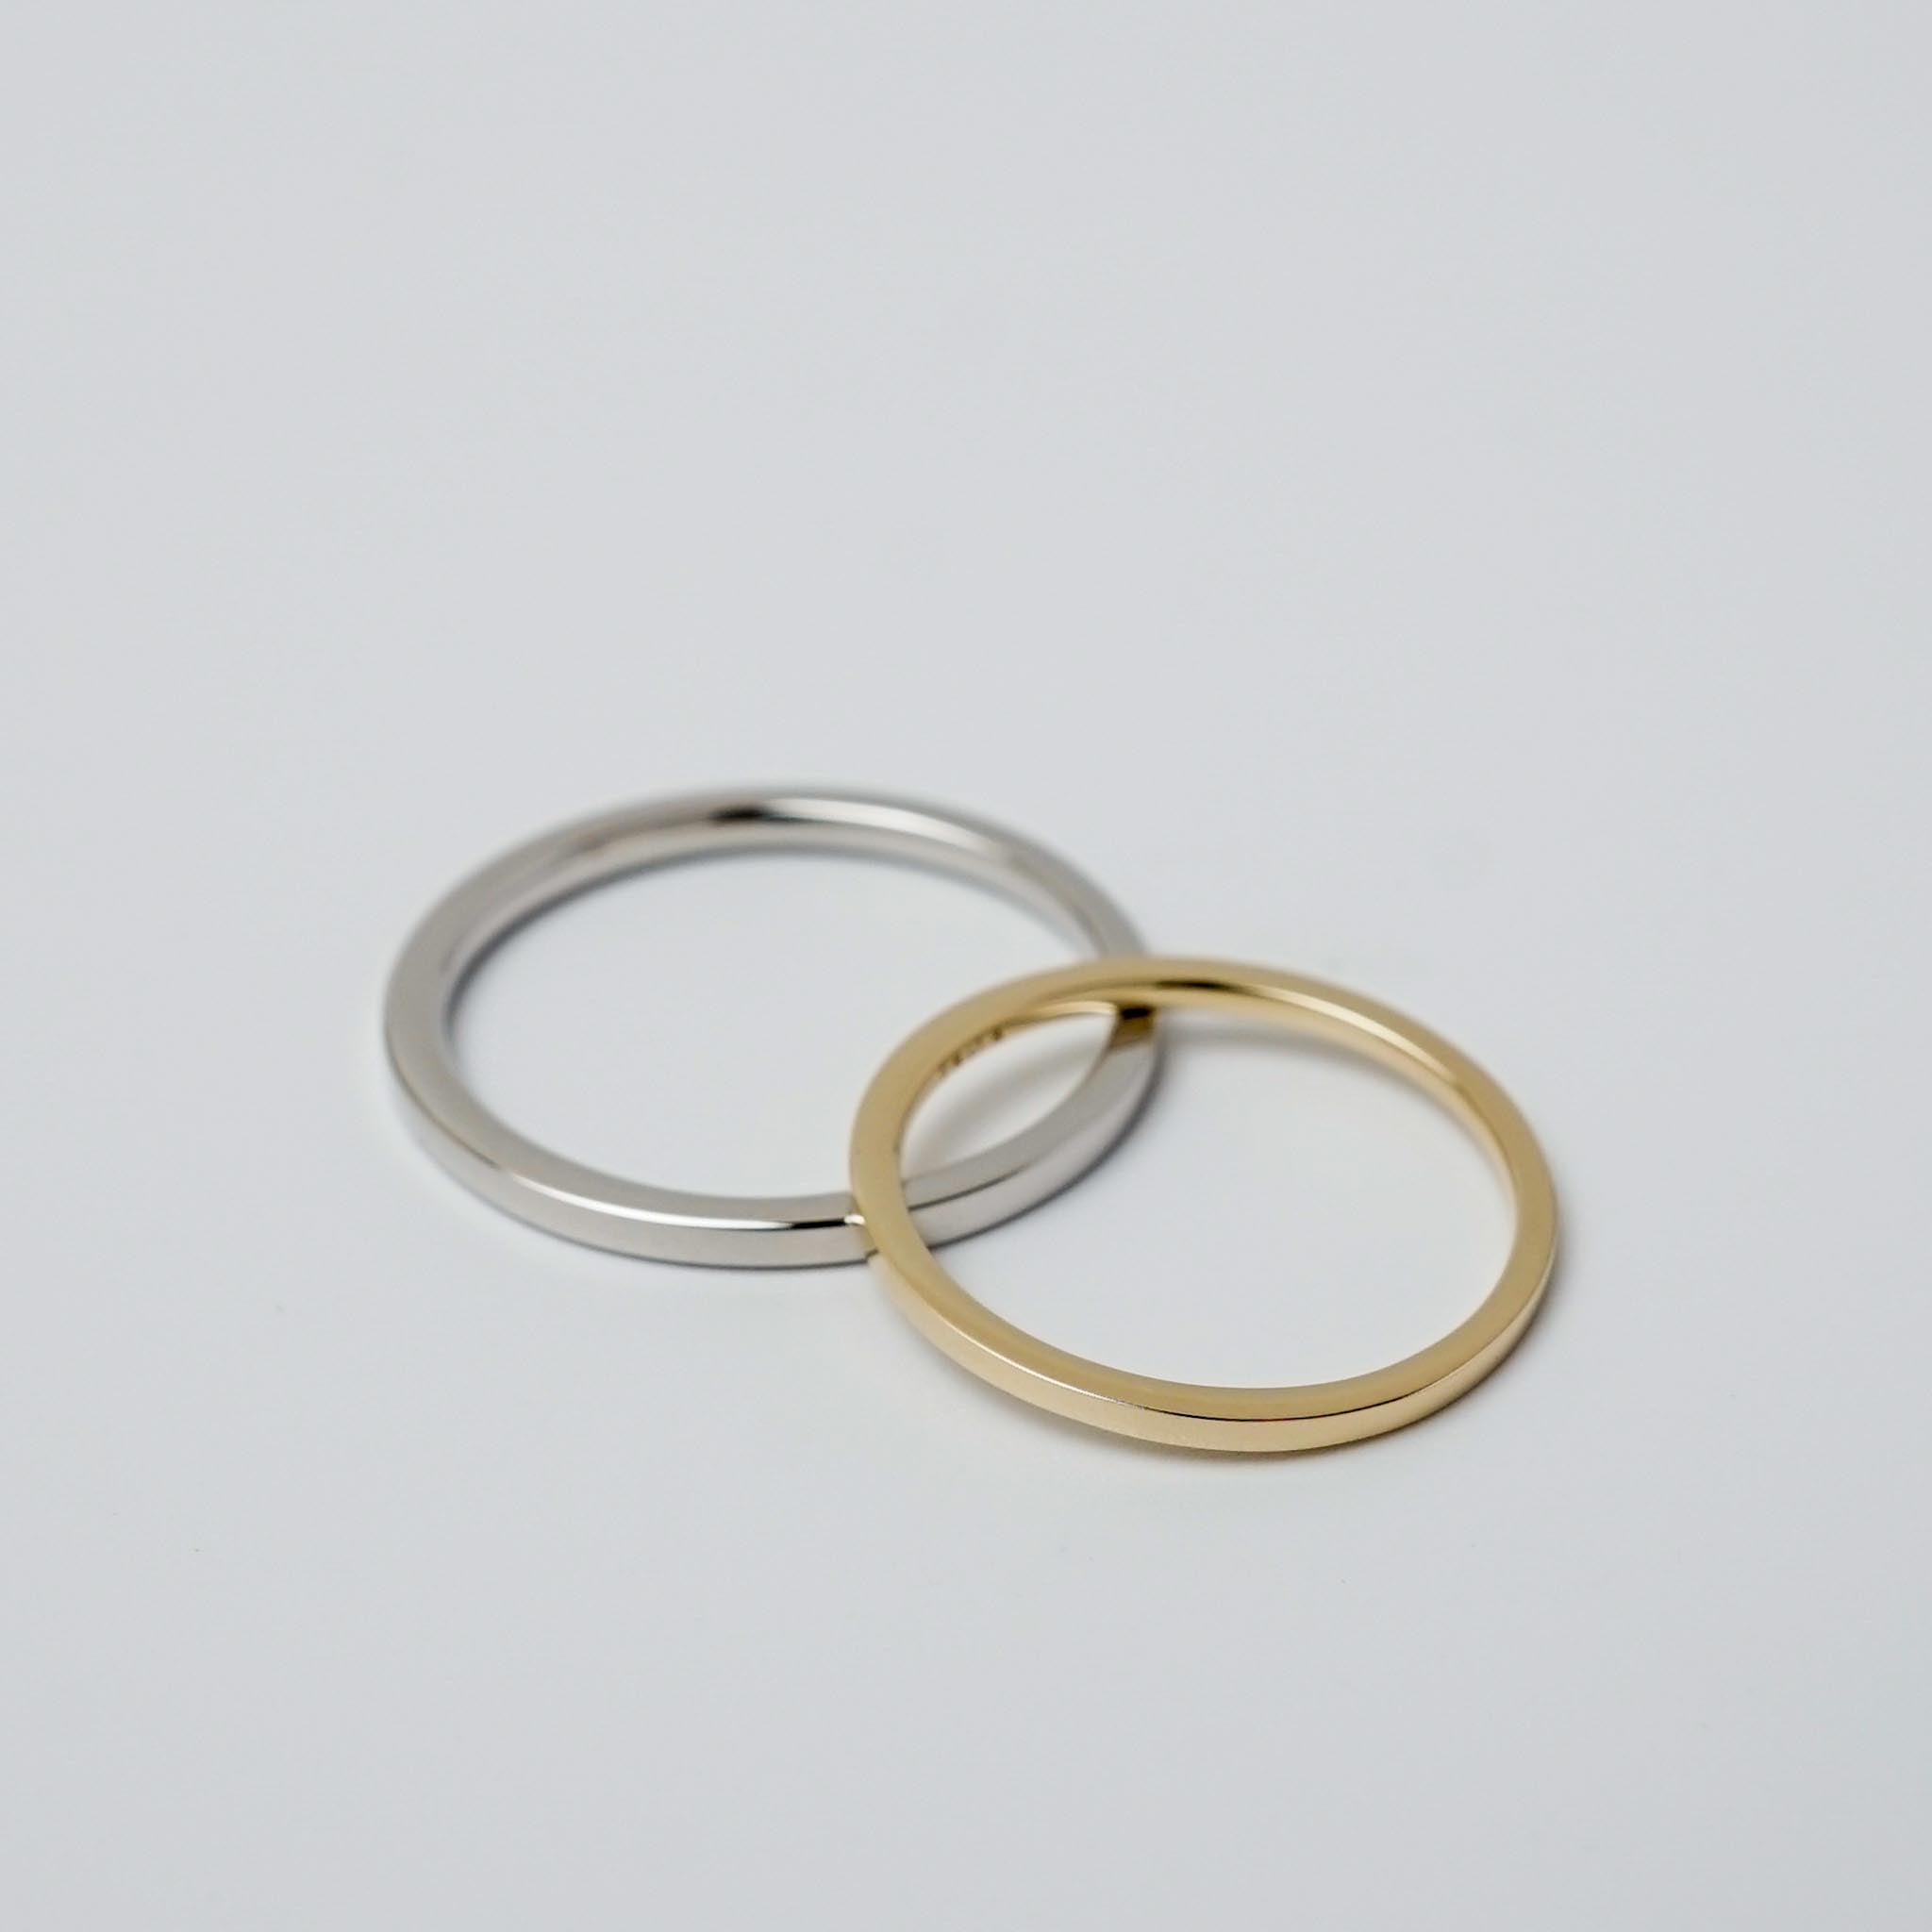 narrow ring ［TA005 Silver925］メンズリング